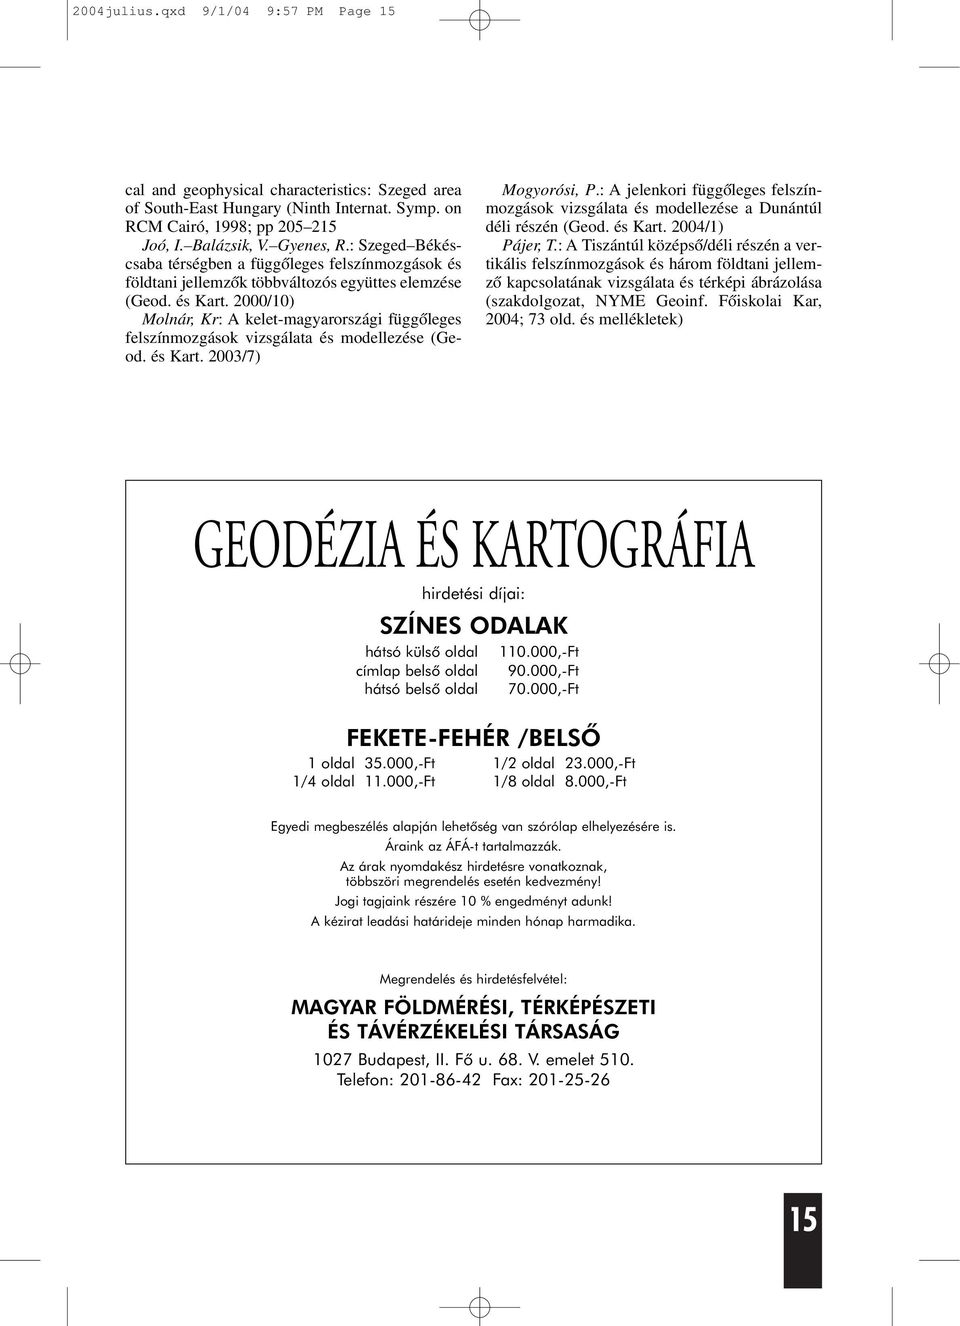 2000/10) Molnár, Kr: A kelet-magyarországi függõleges felszínmozgások vizsgálata és modellezése (Geod. és Kart. 2003/7) Mogyorósi, P.